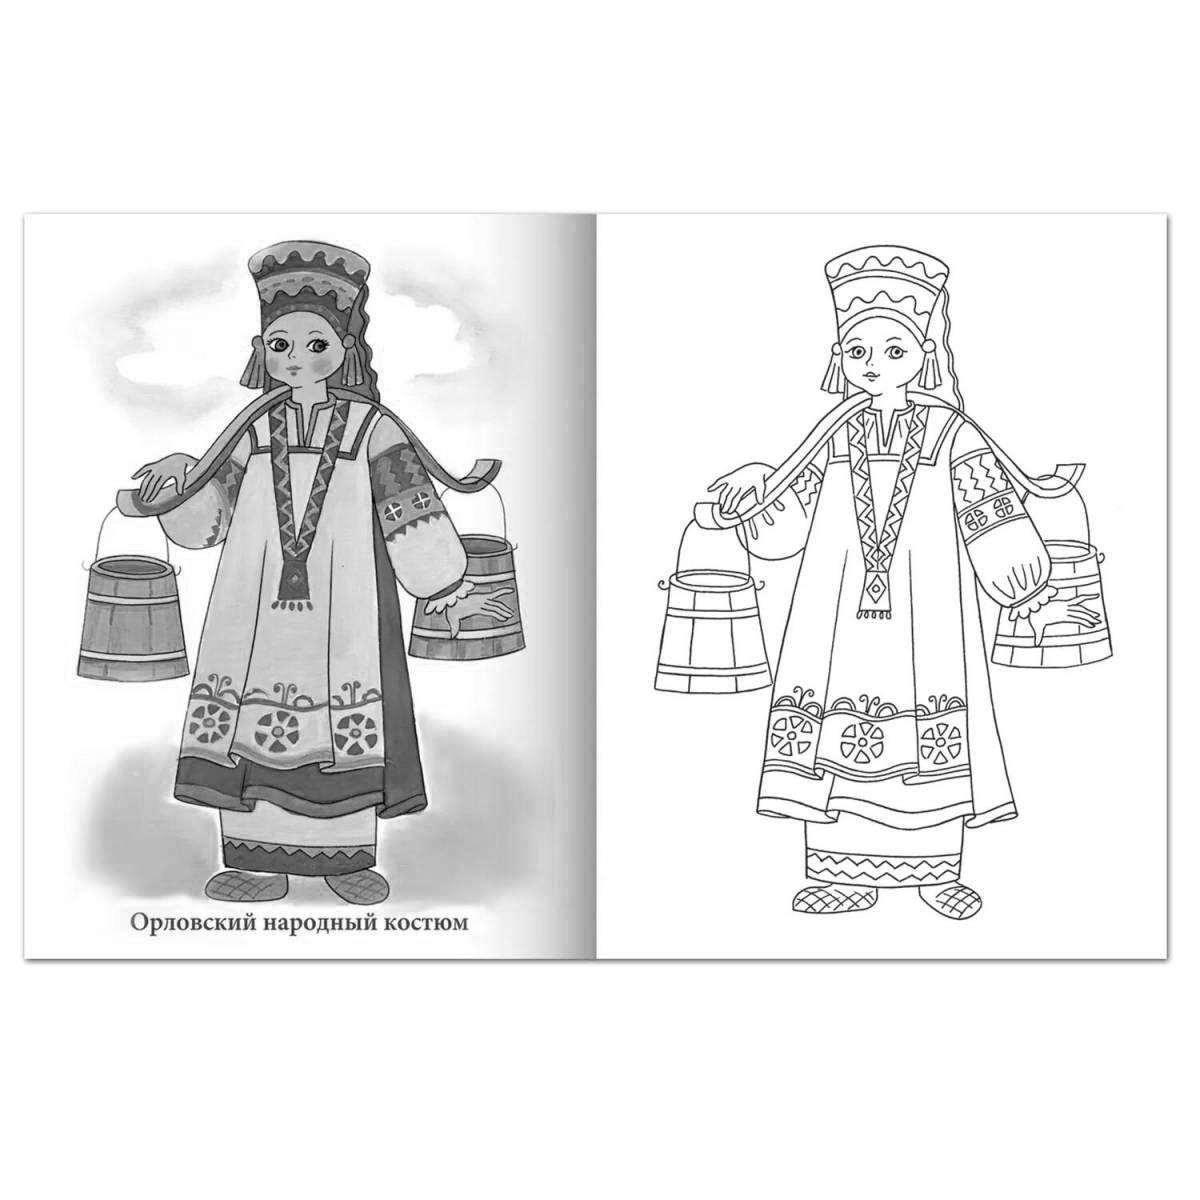 Coloring bright Tula folk costume